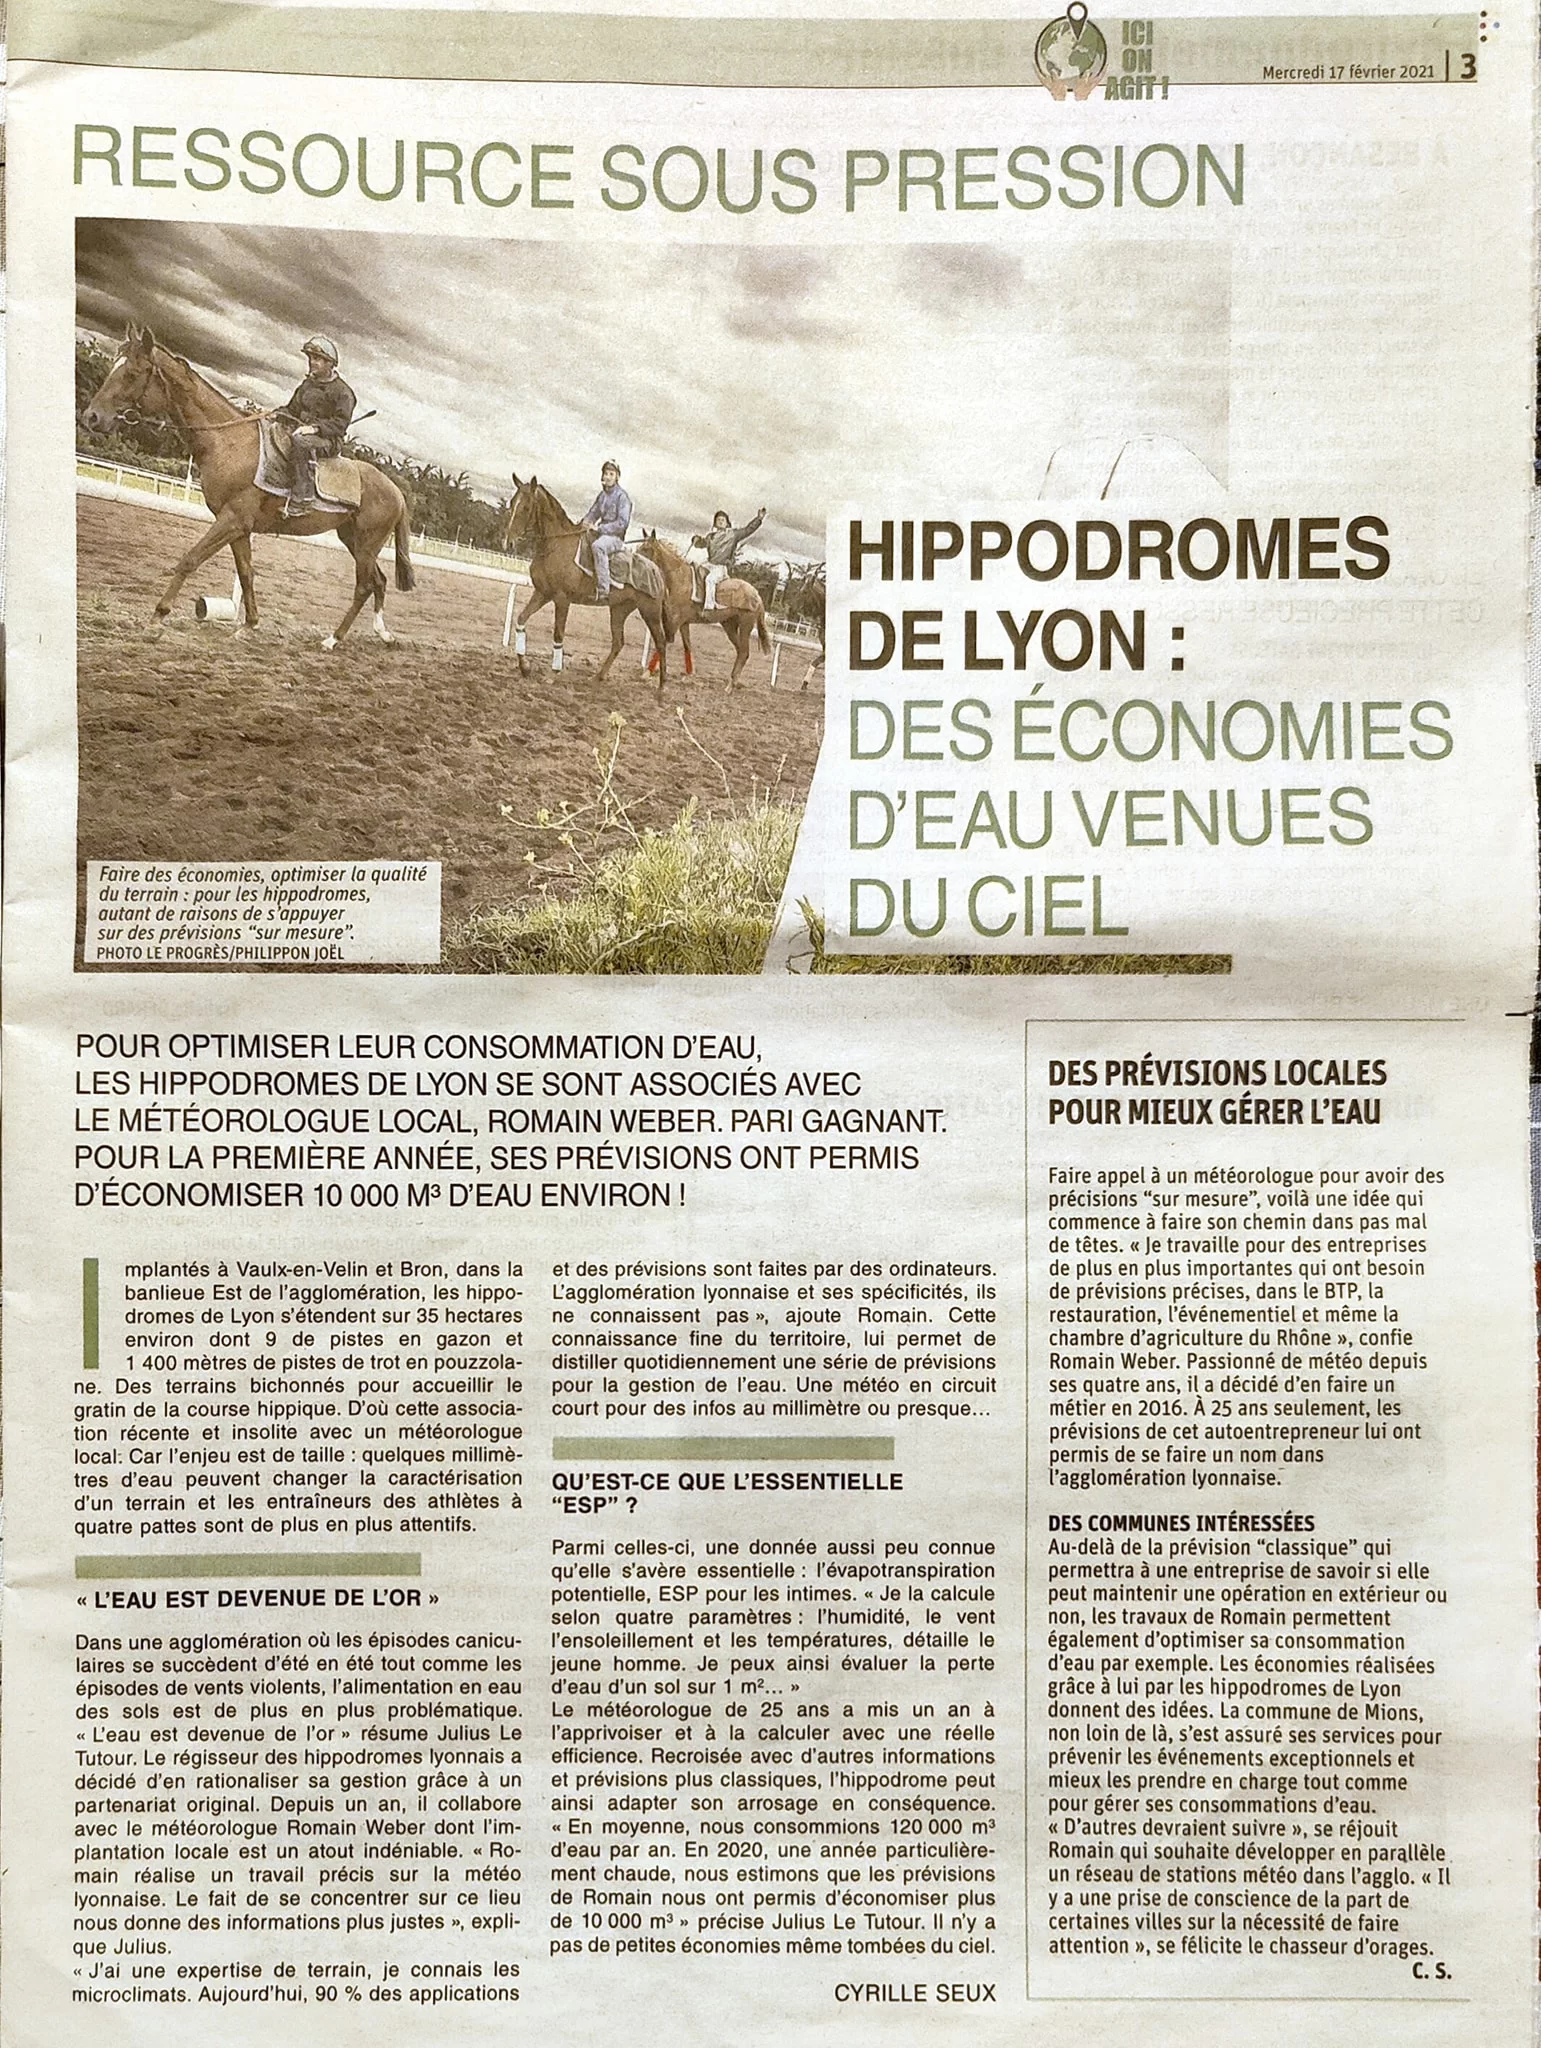 Article du Progrès sur le partenariat et la gestion de l’eau avec les Hippodromes de Lyon.